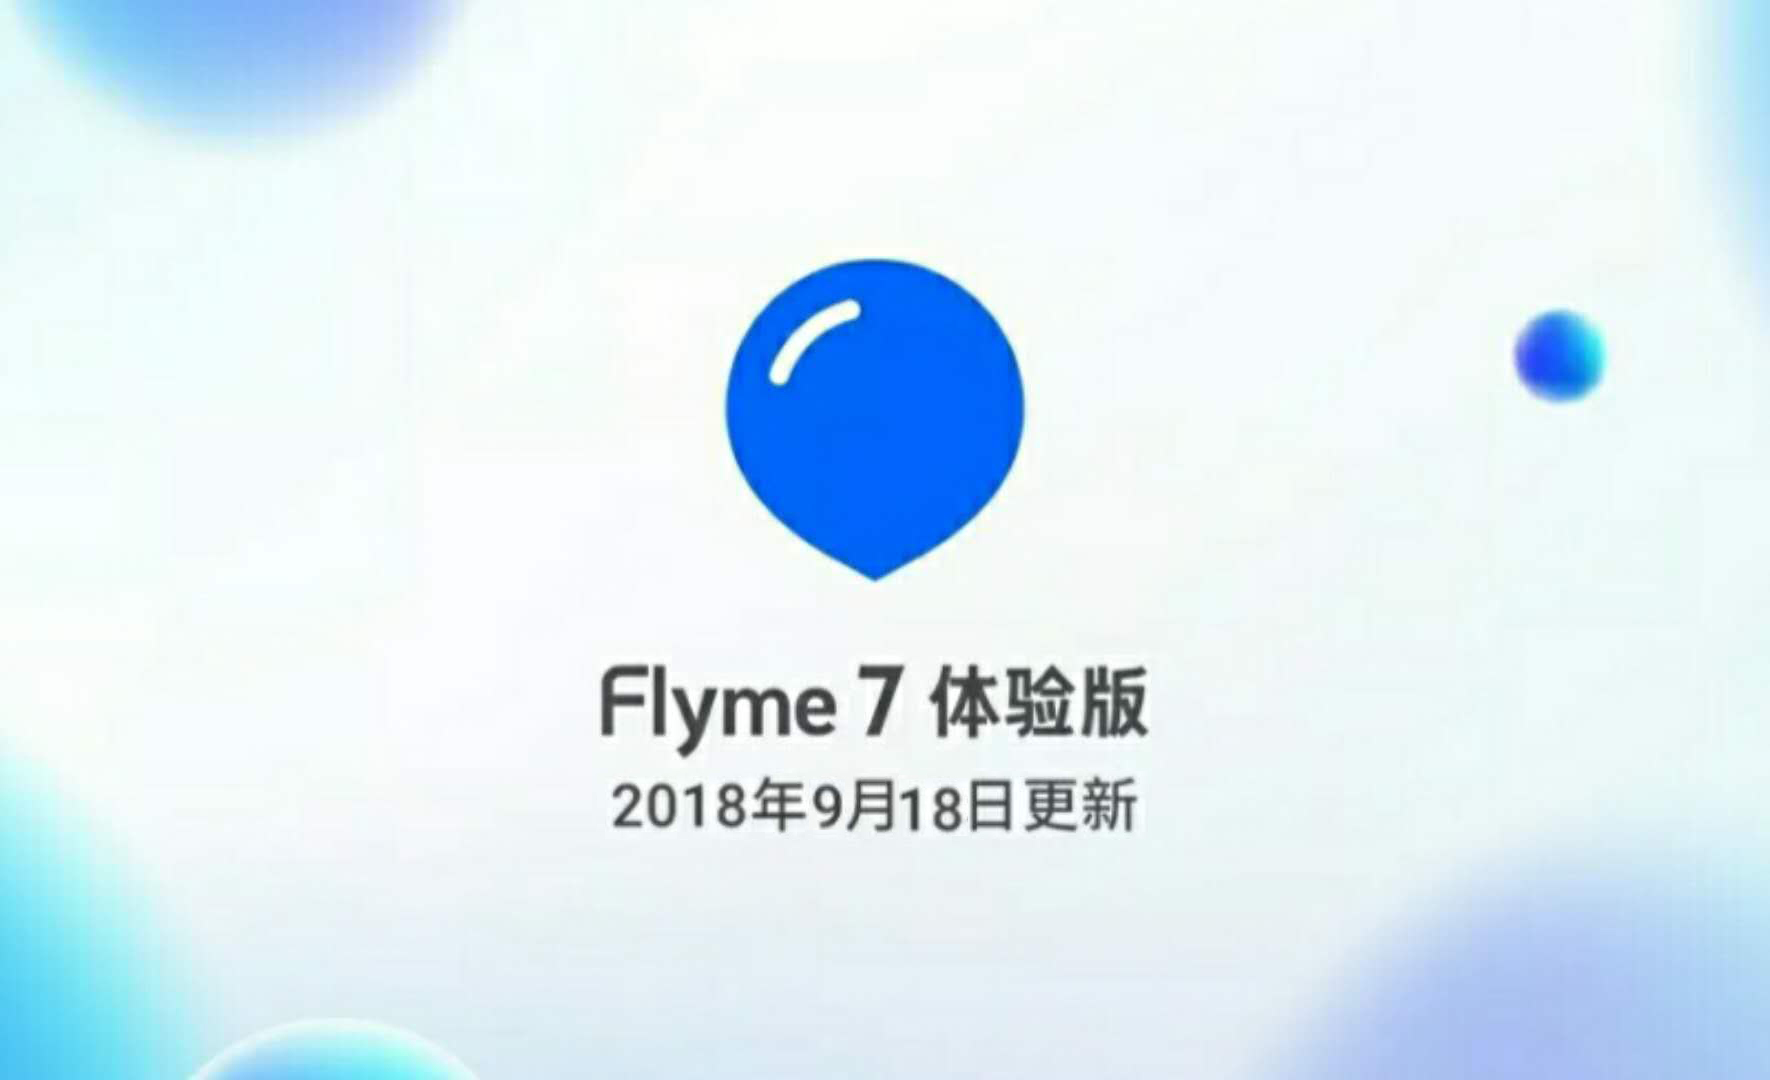 魅族手机系统flyme 7 体验版9月18日更新了